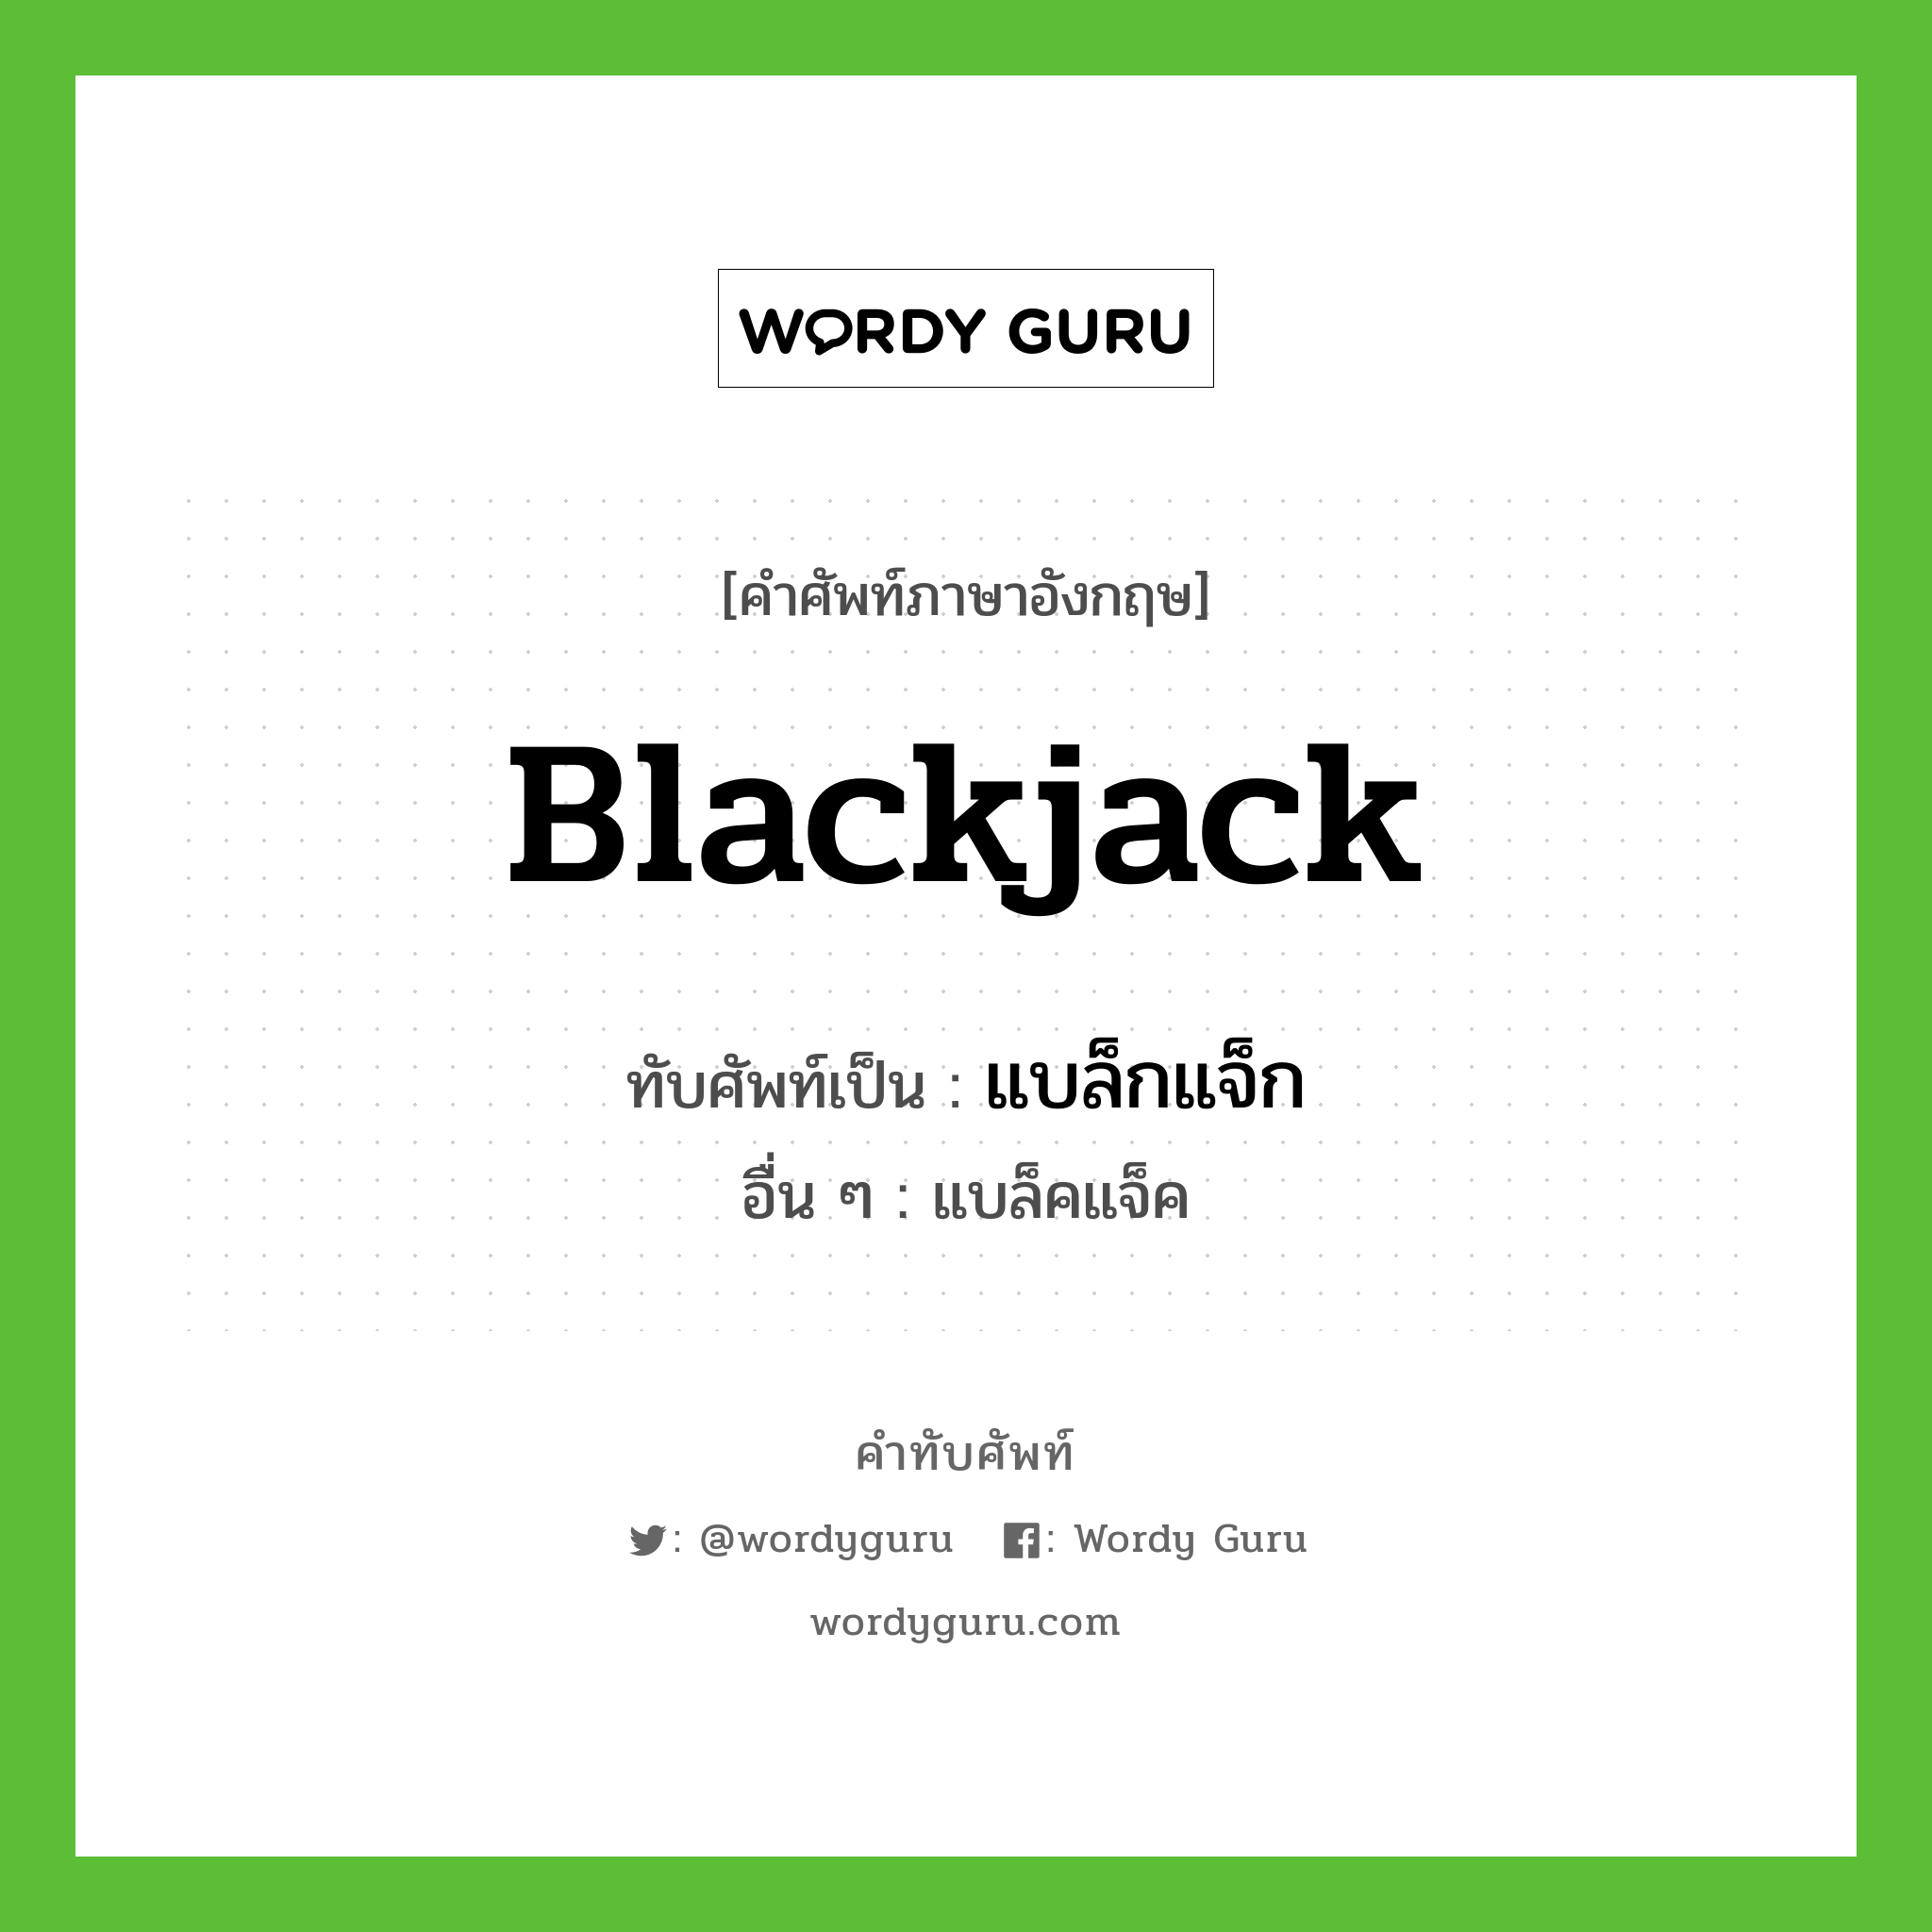 blackjack เขียนเป็นคำไทยว่าอะไร?, คำศัพท์ภาษาอังกฤษ blackjack ทับศัพท์เป็น แบล็กแจ็ก อื่น ๆ แบล็คแจ็ค